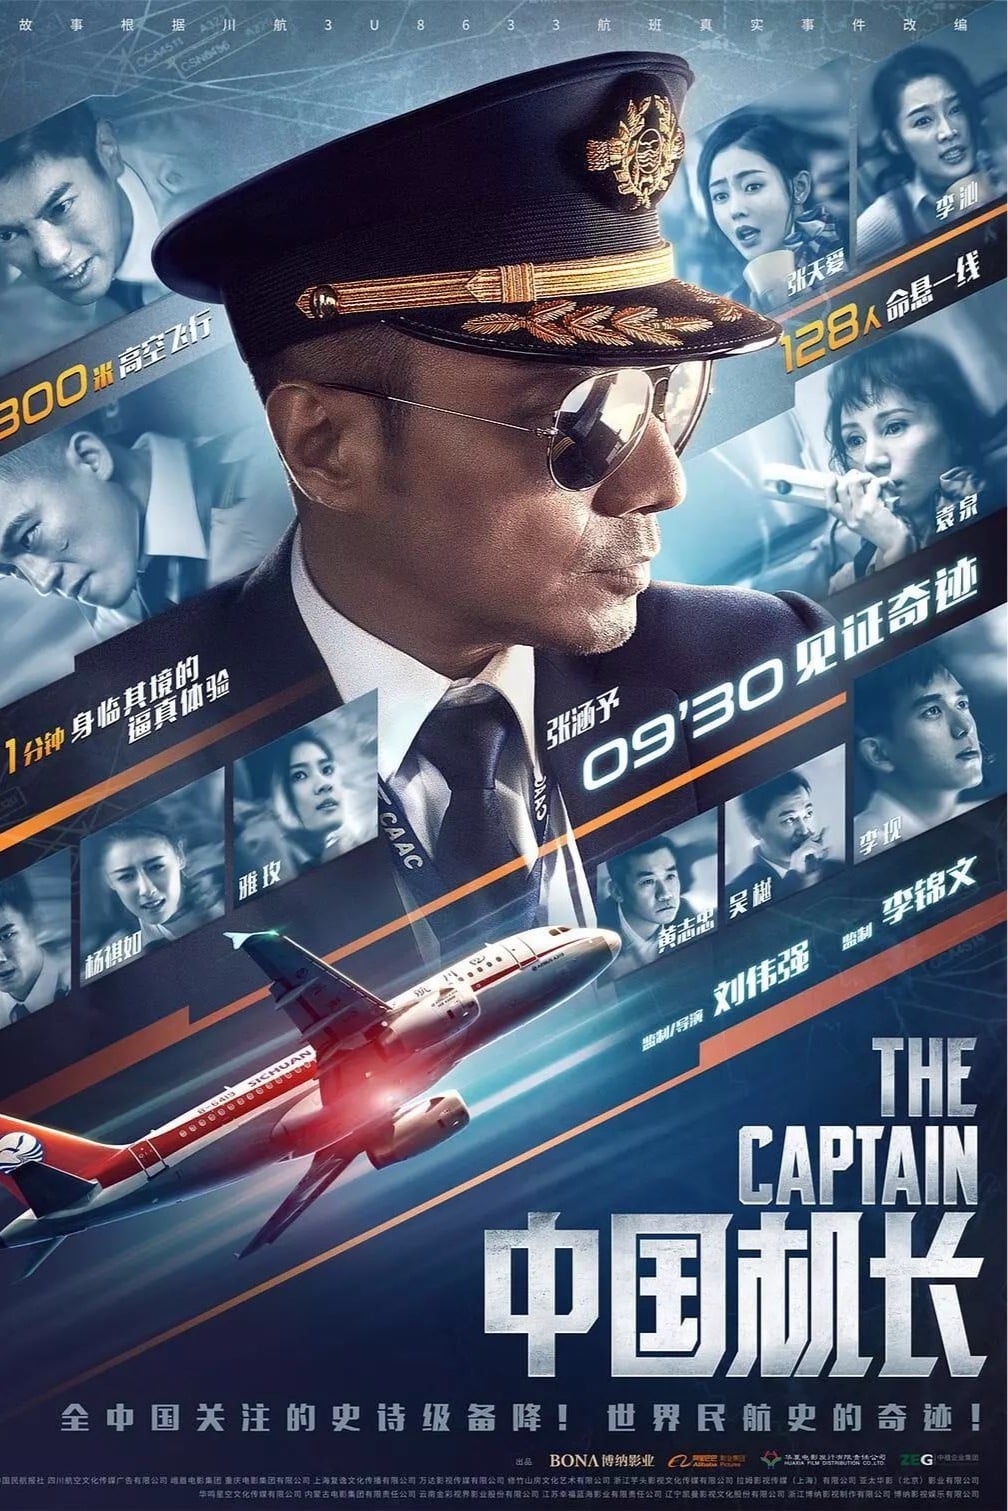 Chuyến Bay Sinh Tử (The Captain) [2019]